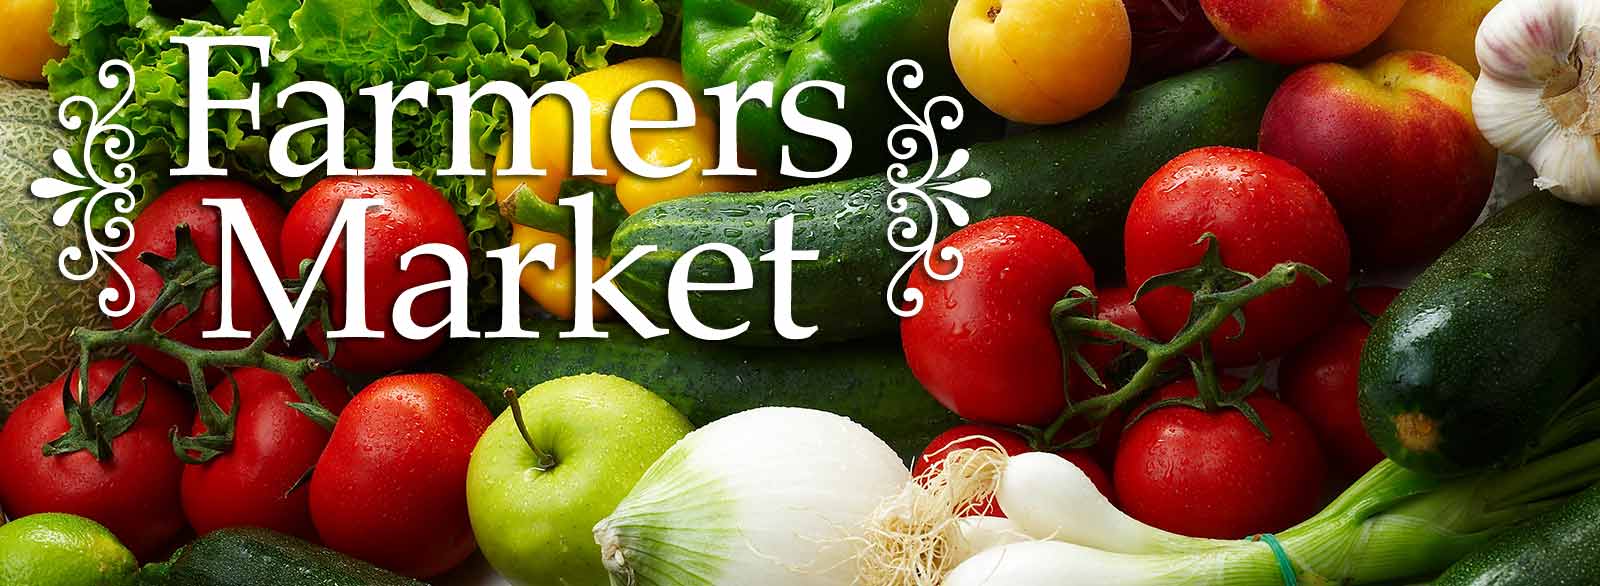 7906-farmers-market-banner.jpg